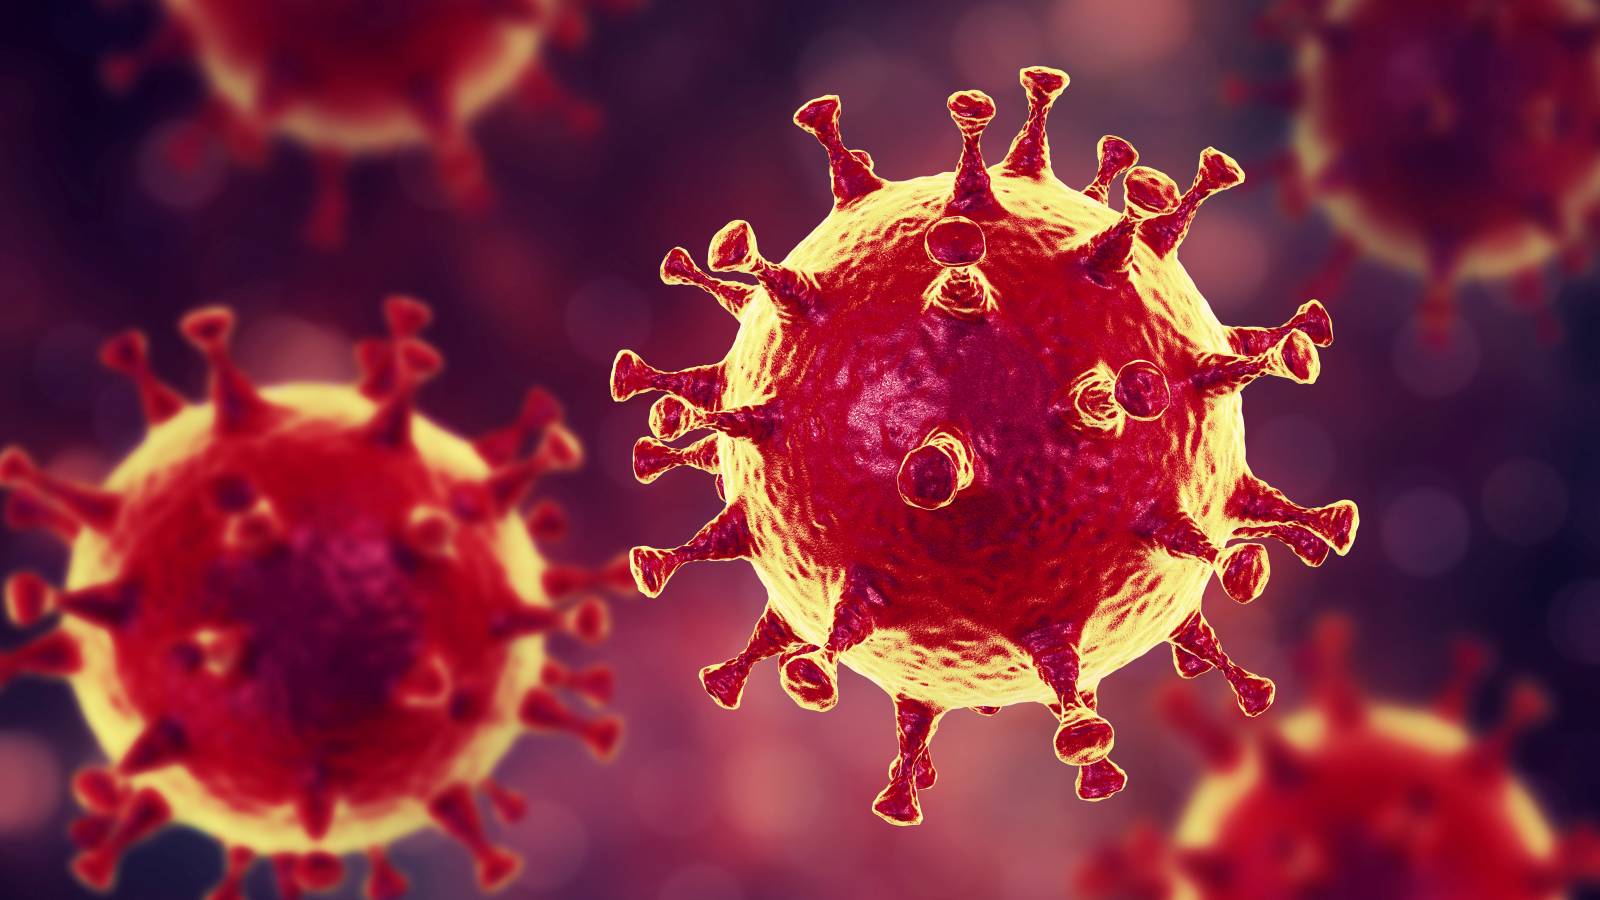 600.000 doses of the coronavirus vaccine in January